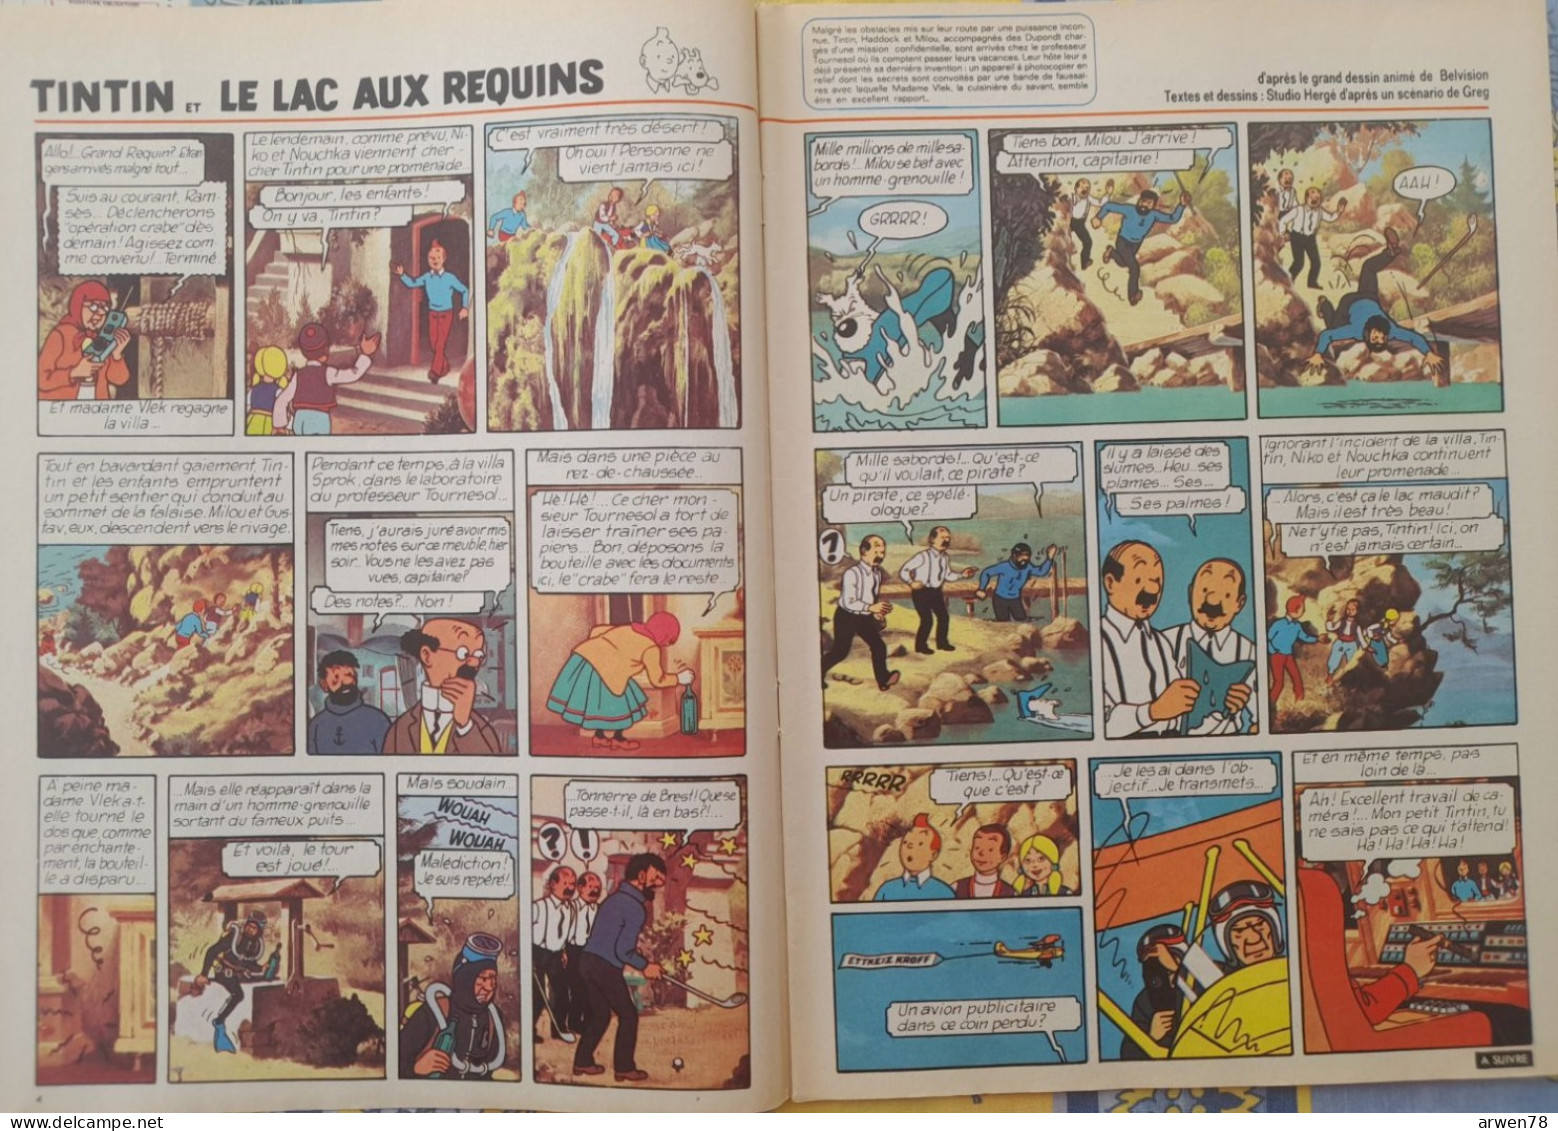 Chez Nous Junior Janvier 1973 Tintin Le Lac Aux Requins Chick Bill Ric Hochet Etc. ... - CANAL BD Magazine